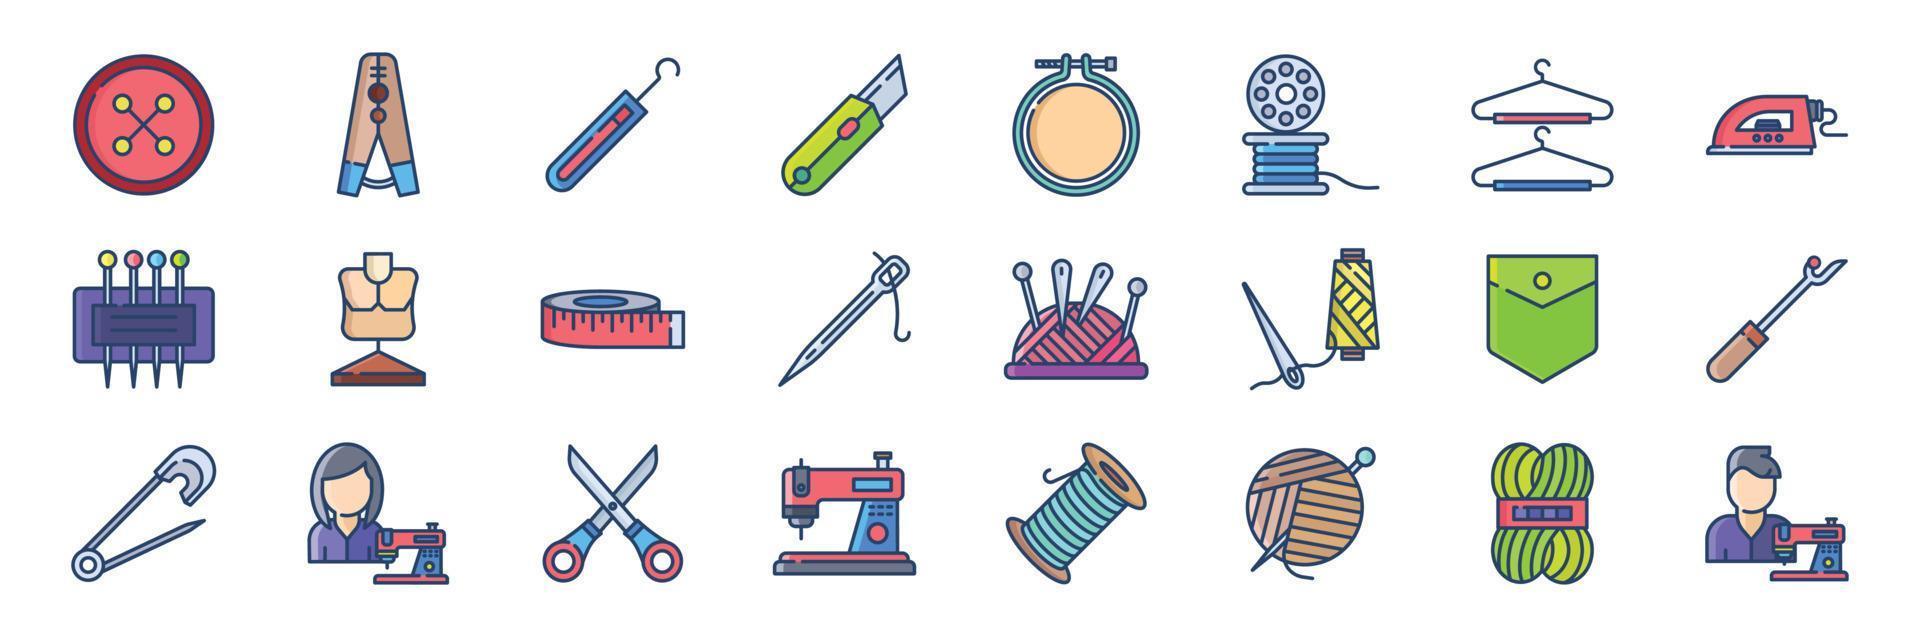 verzameling van pictogrammen verwant naar naaien, inclusief pictogrammen Leuk vinden knop, doeken pin, haken, borduurwerk hoepel en meer. vector illustraties, pixel perfect reeks